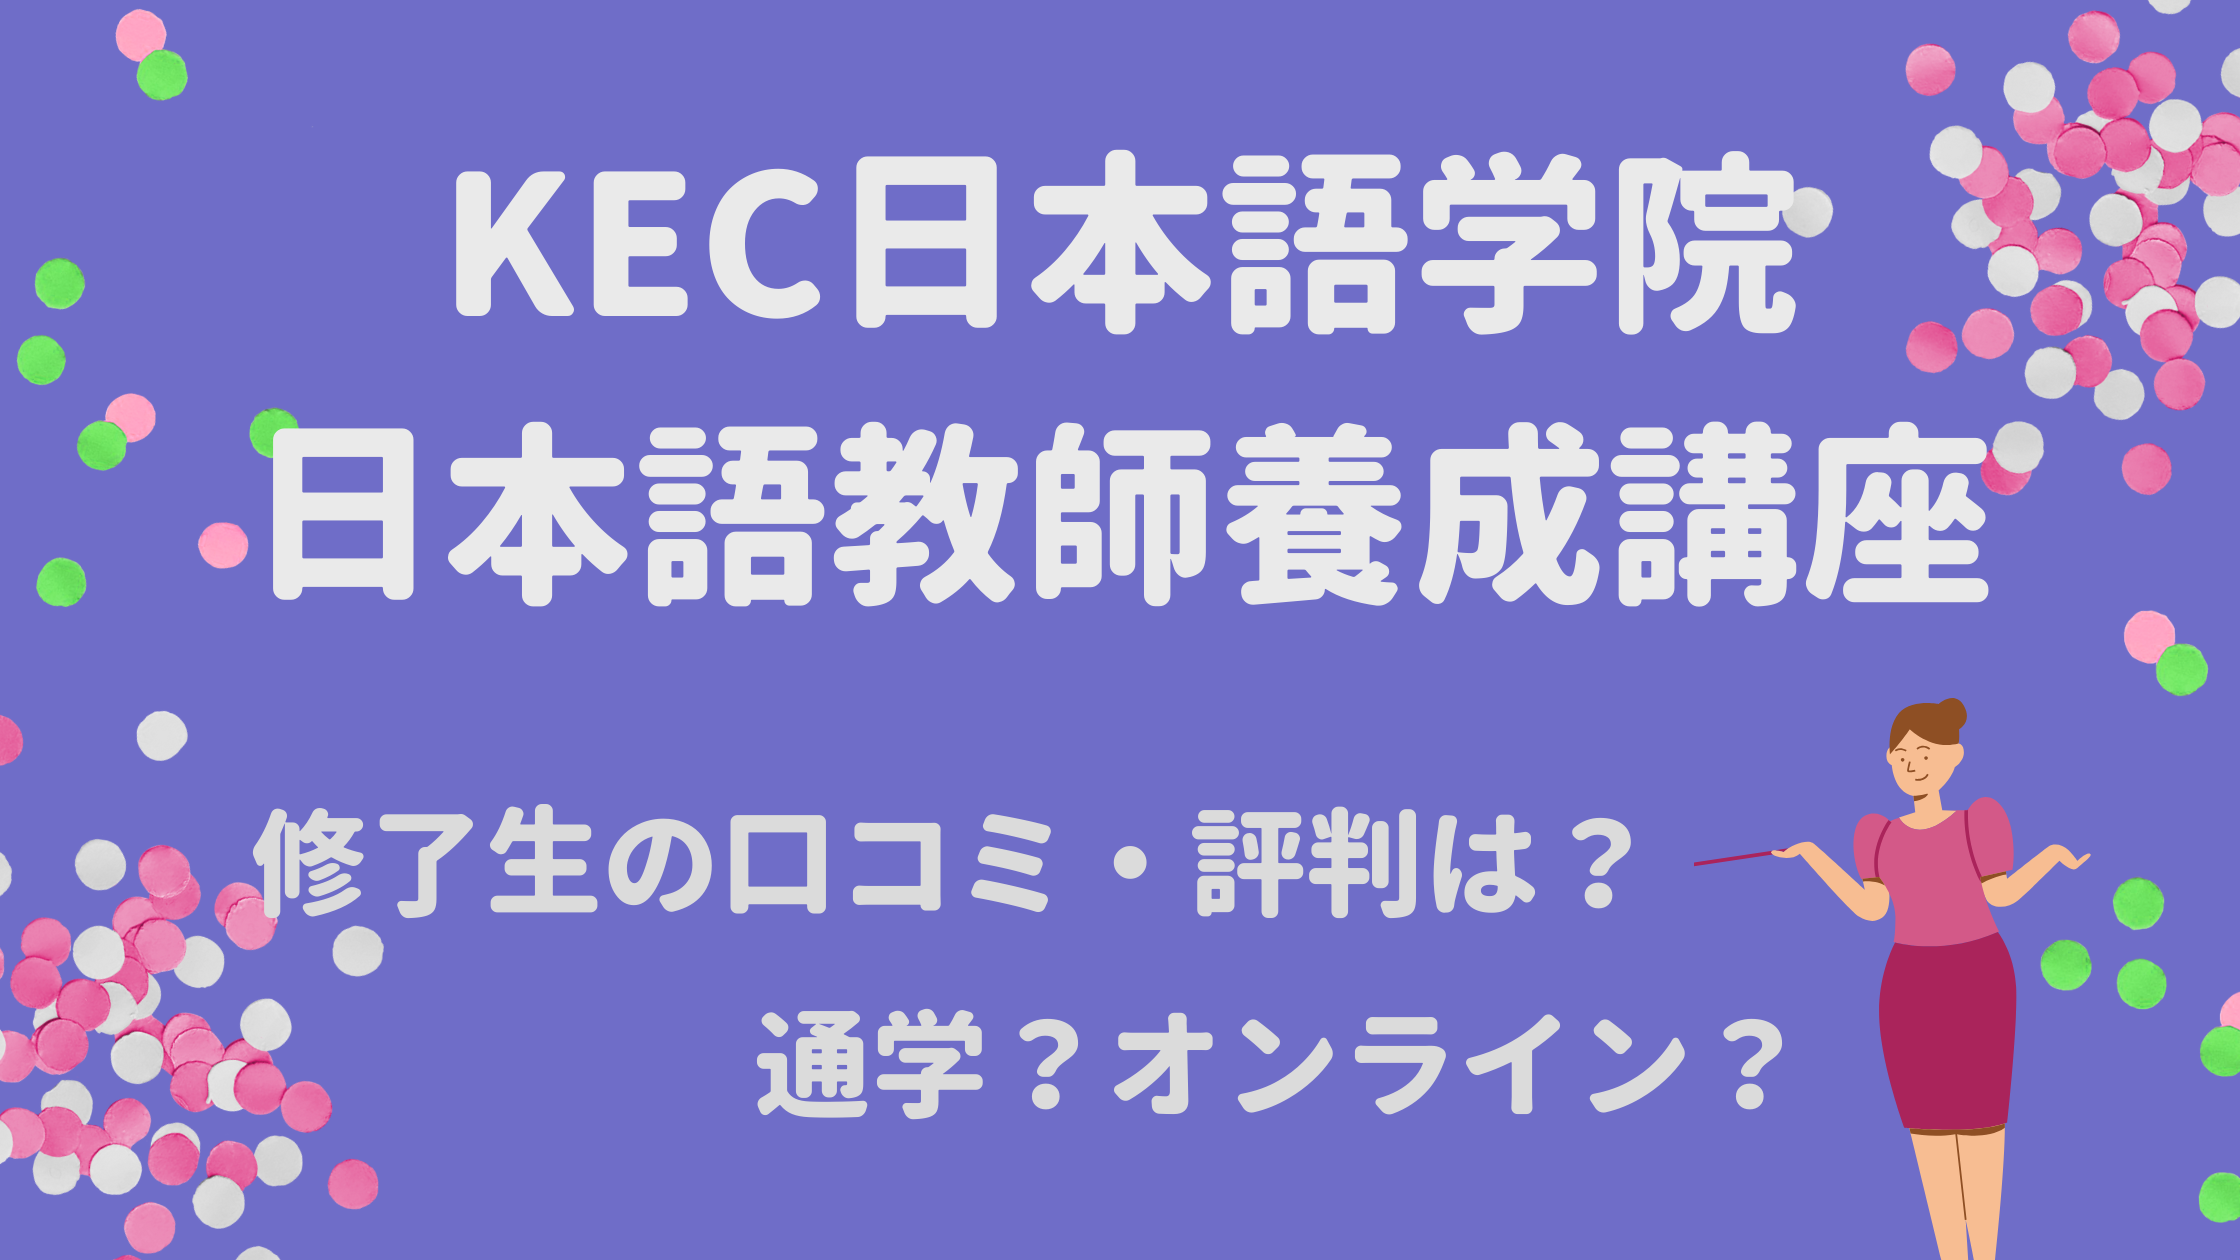 KEC日本語学院